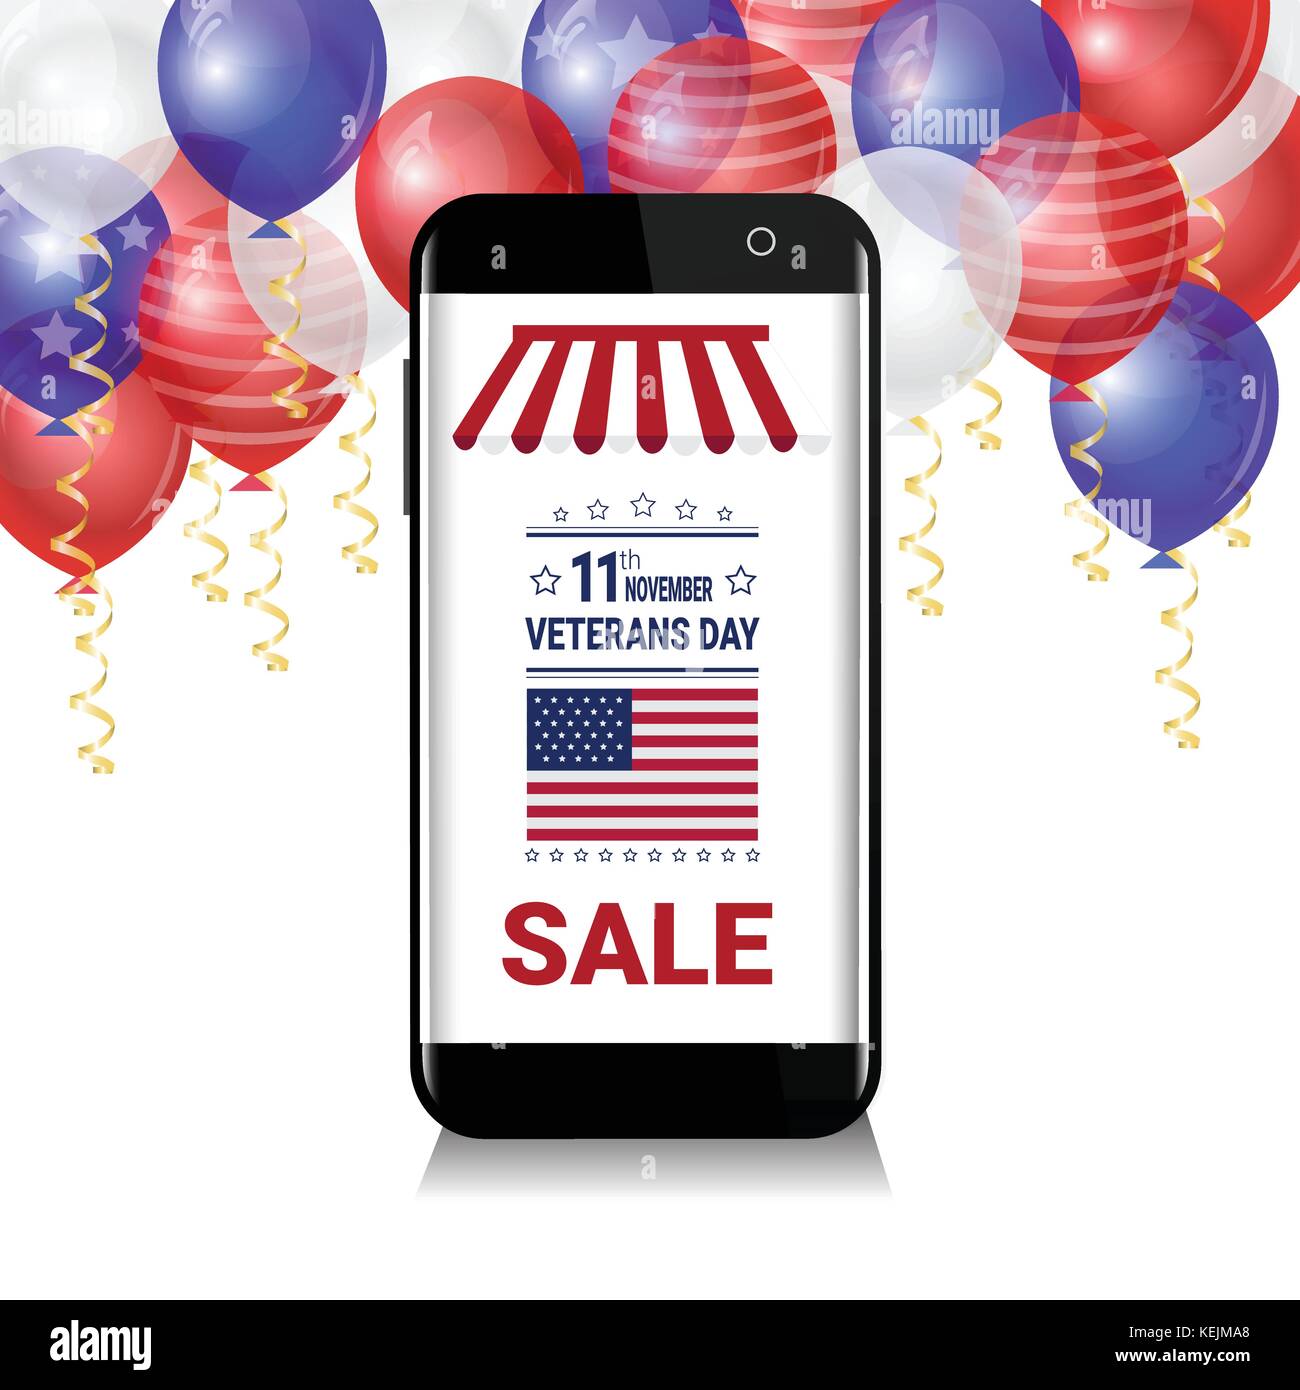 Smart Phone mit Verkauf für Veteran tag Nachricht über weiße, blaue und rote Luftballons auf Hintergrund, usa National Holiday Rabatte Poster Stock Vektor